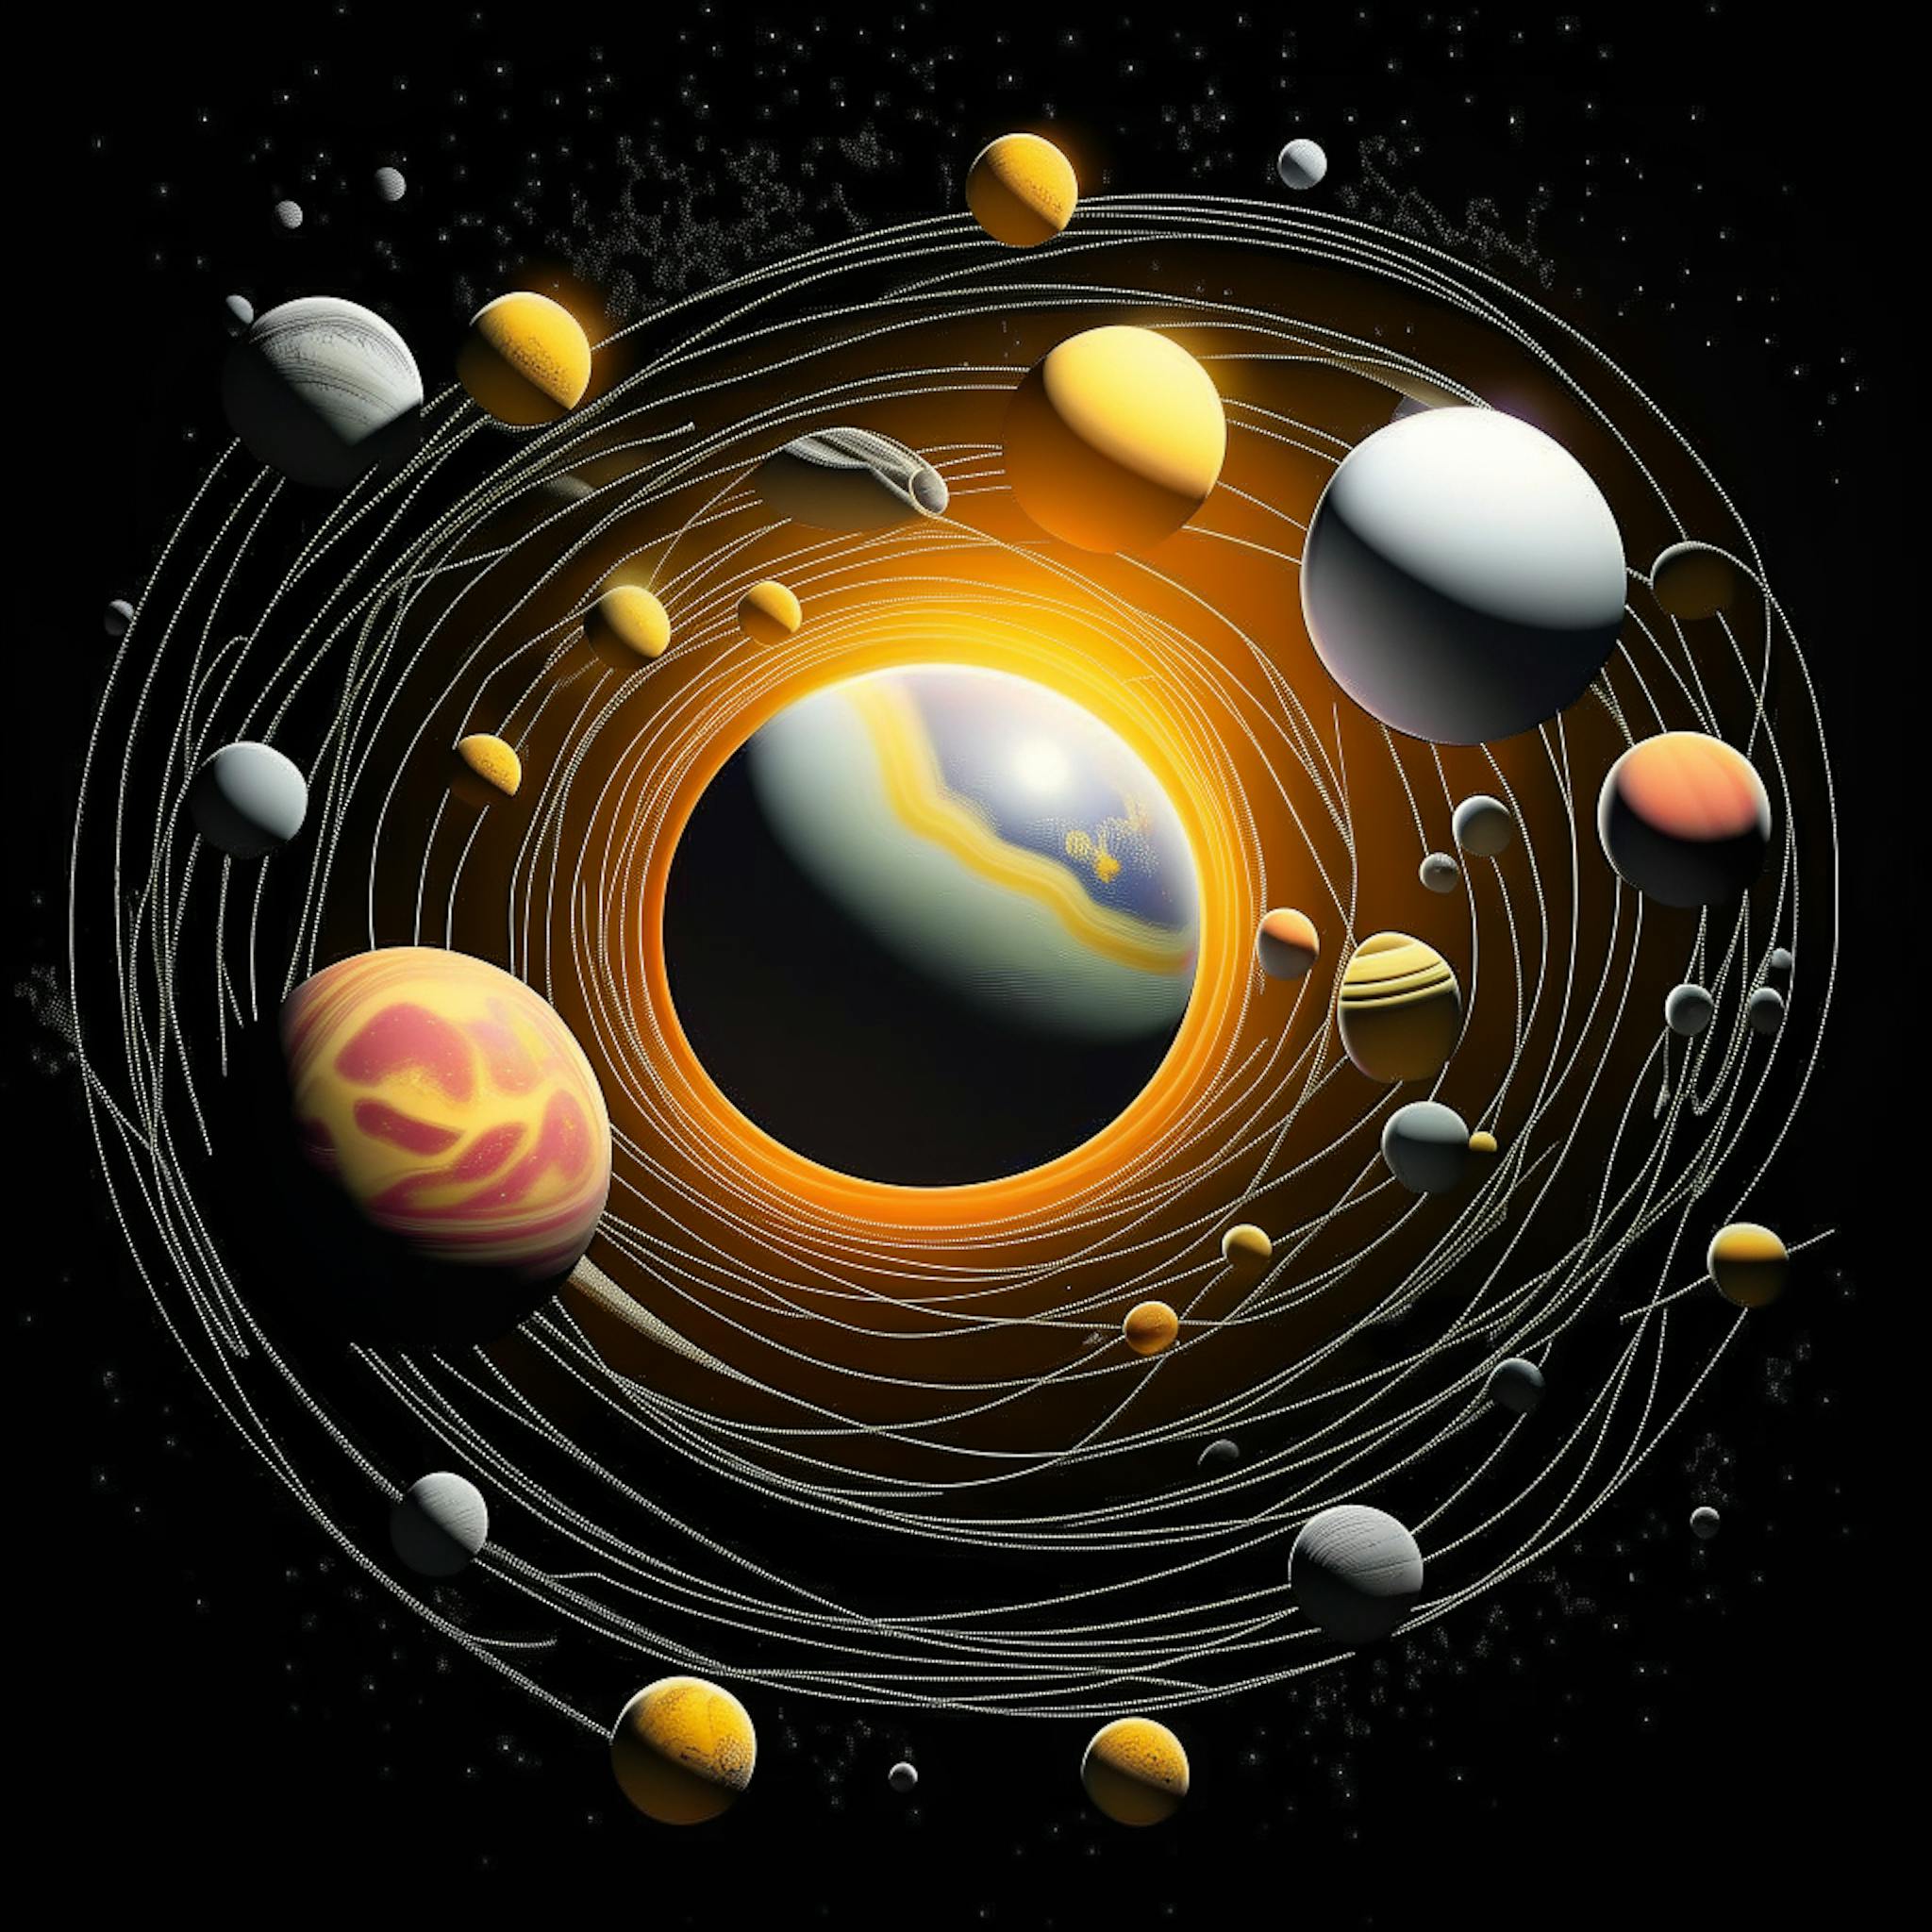 featured image - Dois planetas microlentes através do canal planetário-cáustico: observação